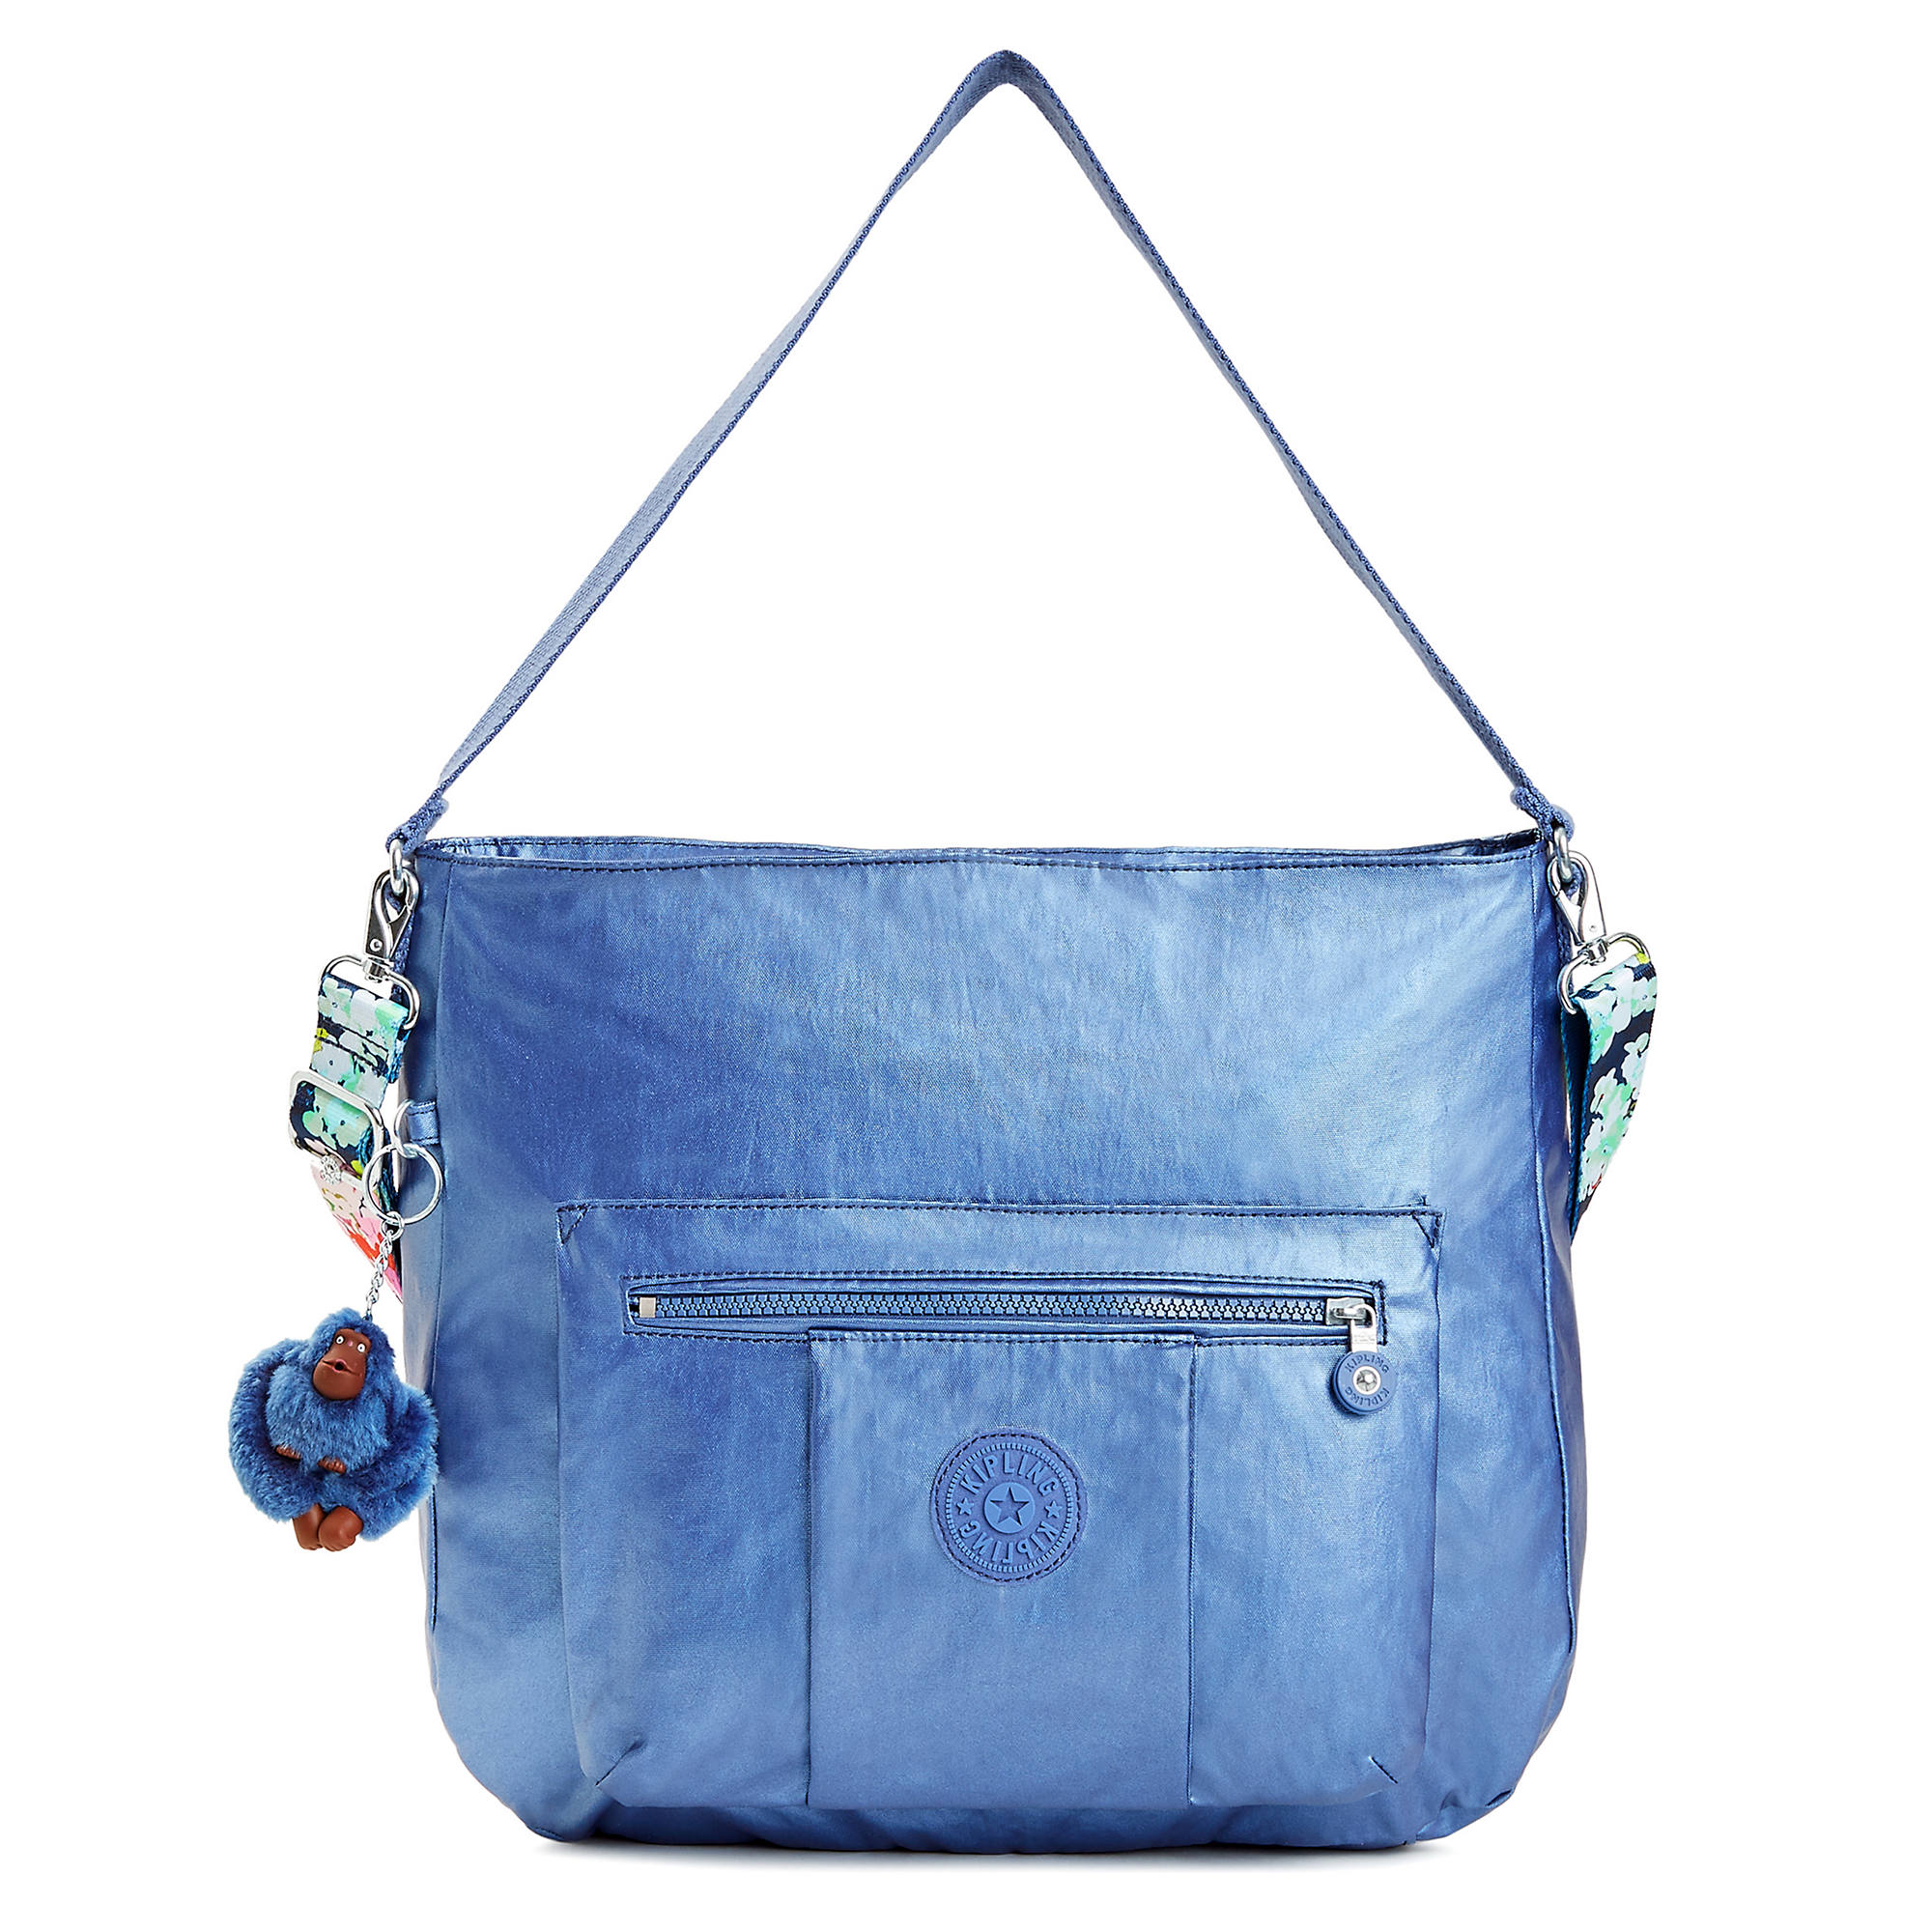 Carley Metallic Handbag | Kipling